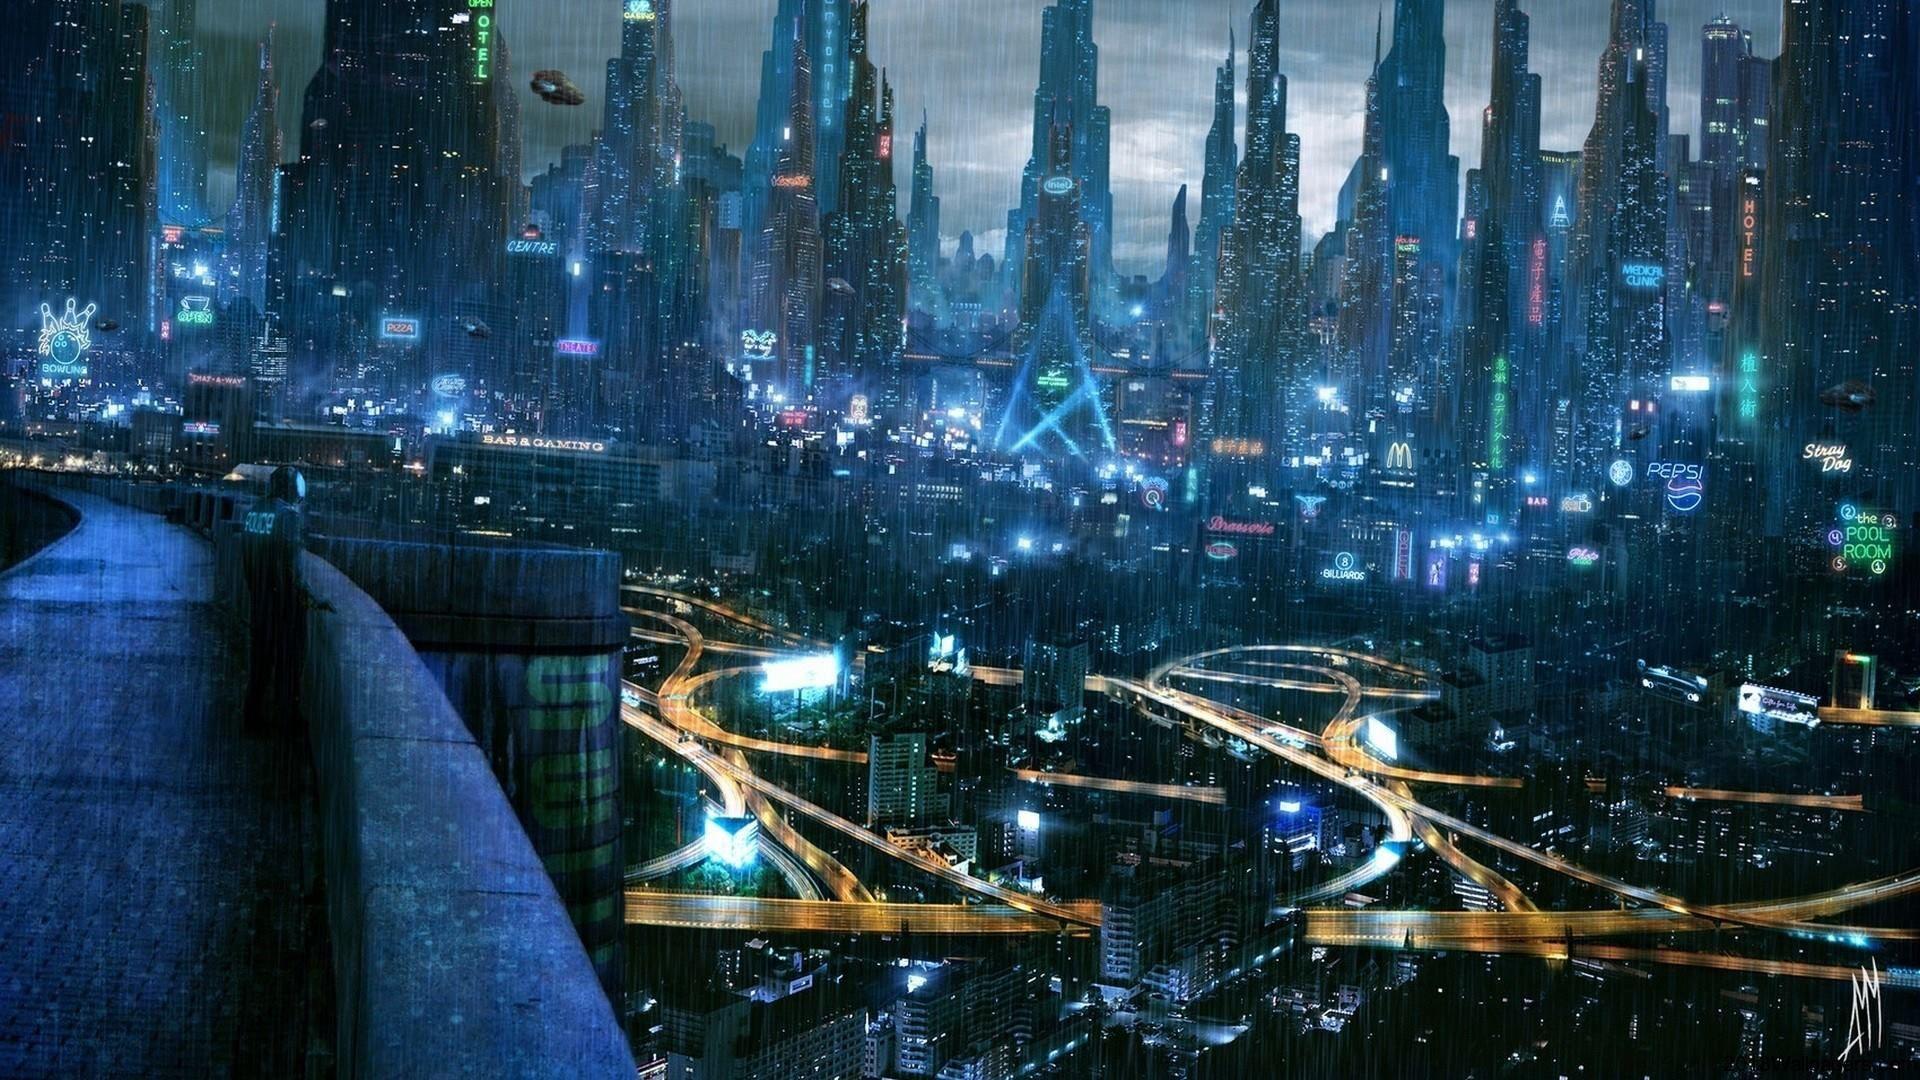 Cyberpunk, Futuristic City, Wallpaper. Cyberpunk Art Scenes